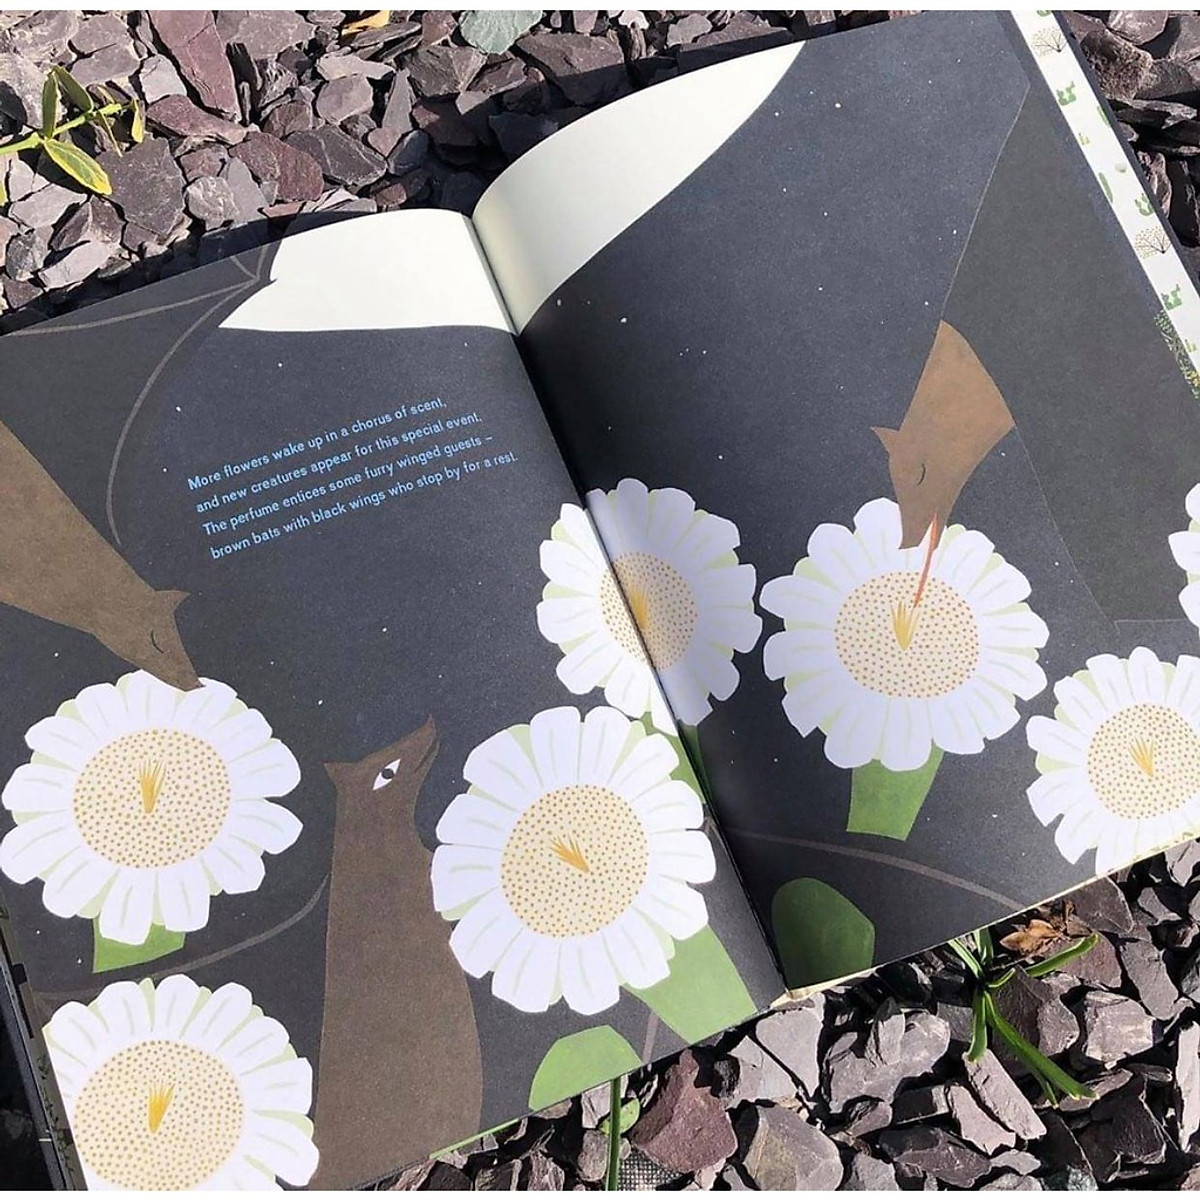 Sách - The Night Flower - Sách Nói Về Loài Hoa Xương Rồng Nở Về Đêm, Cây Xương Rồng Saguaro Trên Sa Mạc Sonoran Ở Arizona - Nhà Sách Giáo Dục Quốc Tế, Bìa Cứng, In Màu